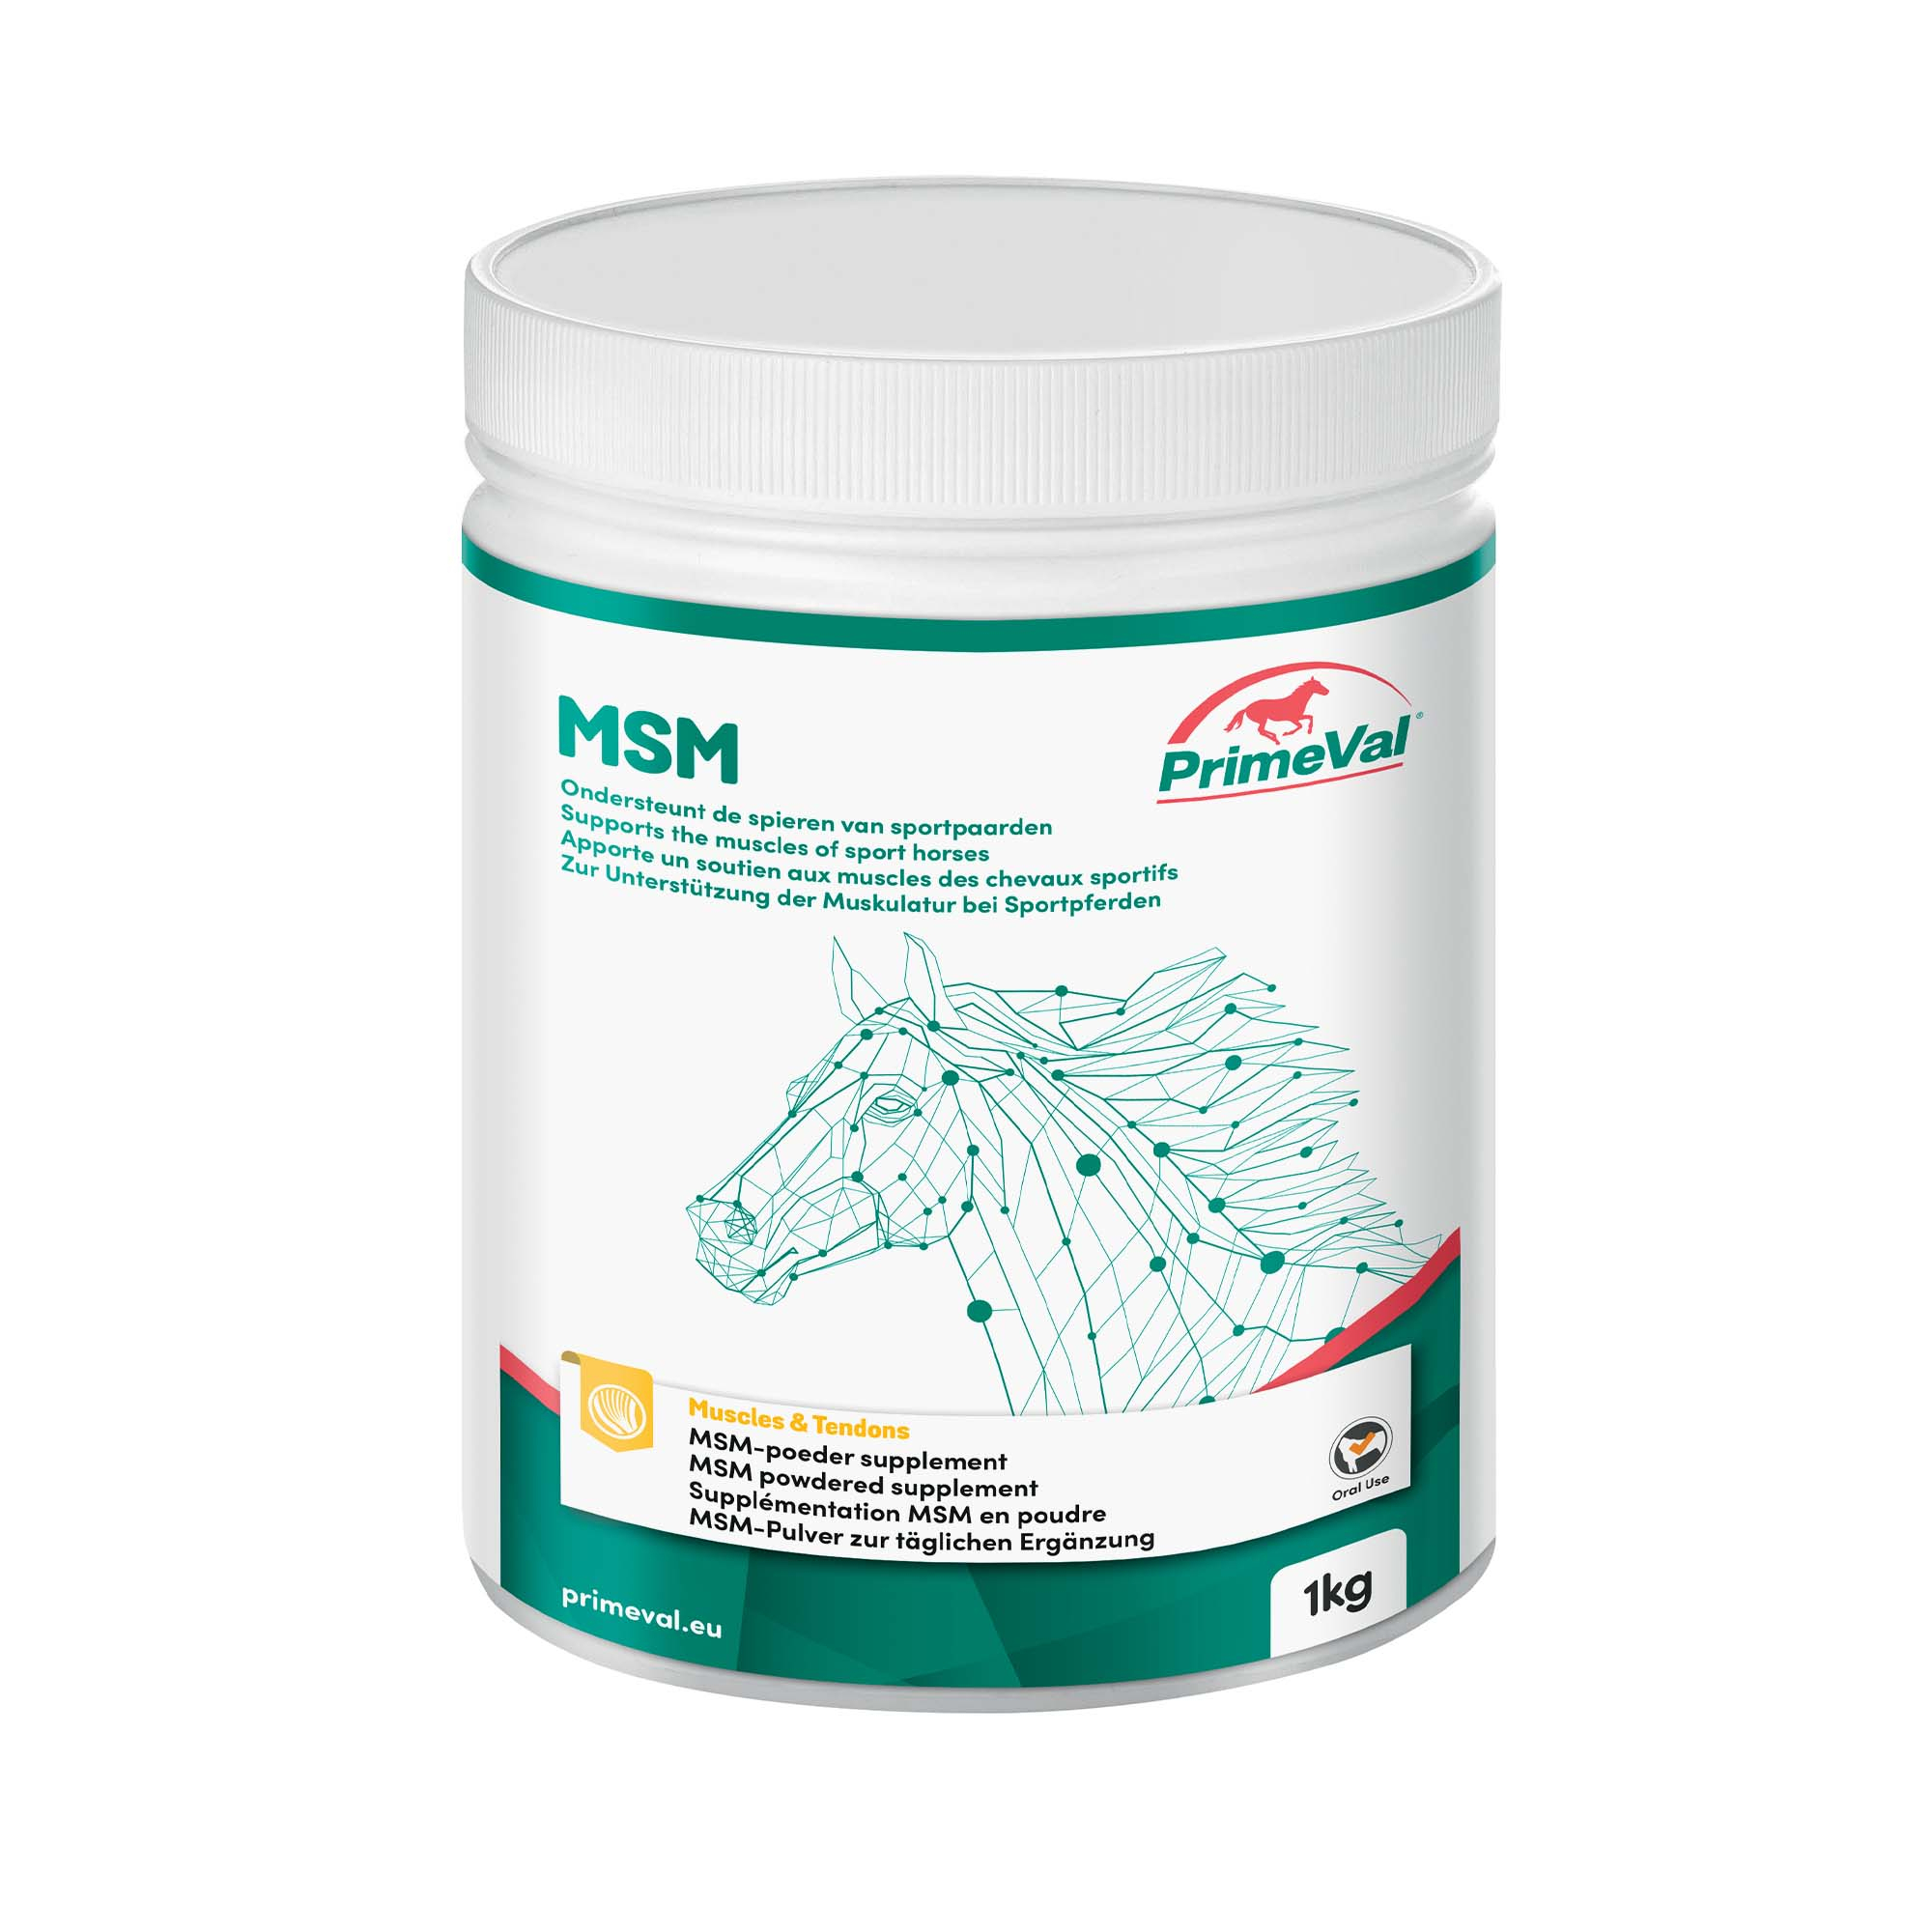 PrimeVal MSM-Futterergänzungsmittel für Sportpferde